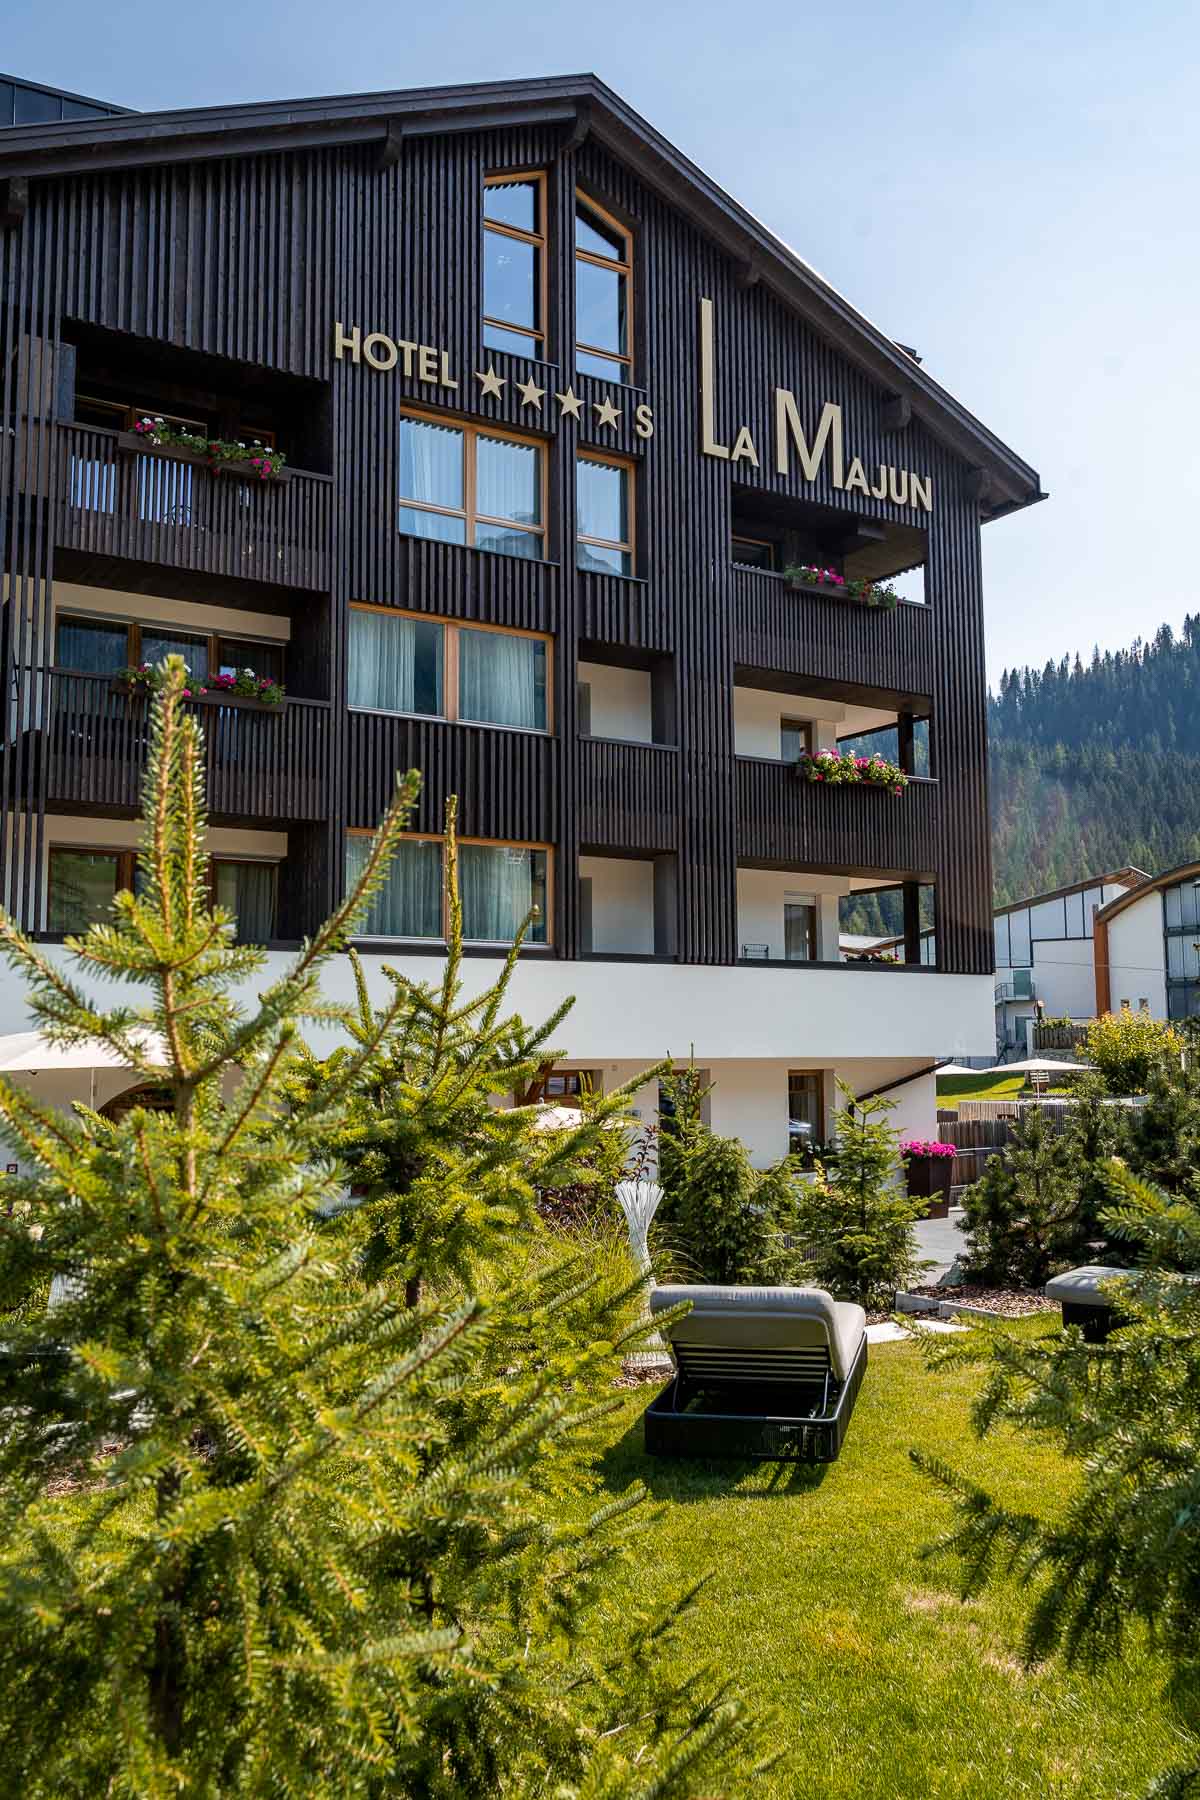 Hotel La Majun, an amazing hotel in La Villa in the Dolomites